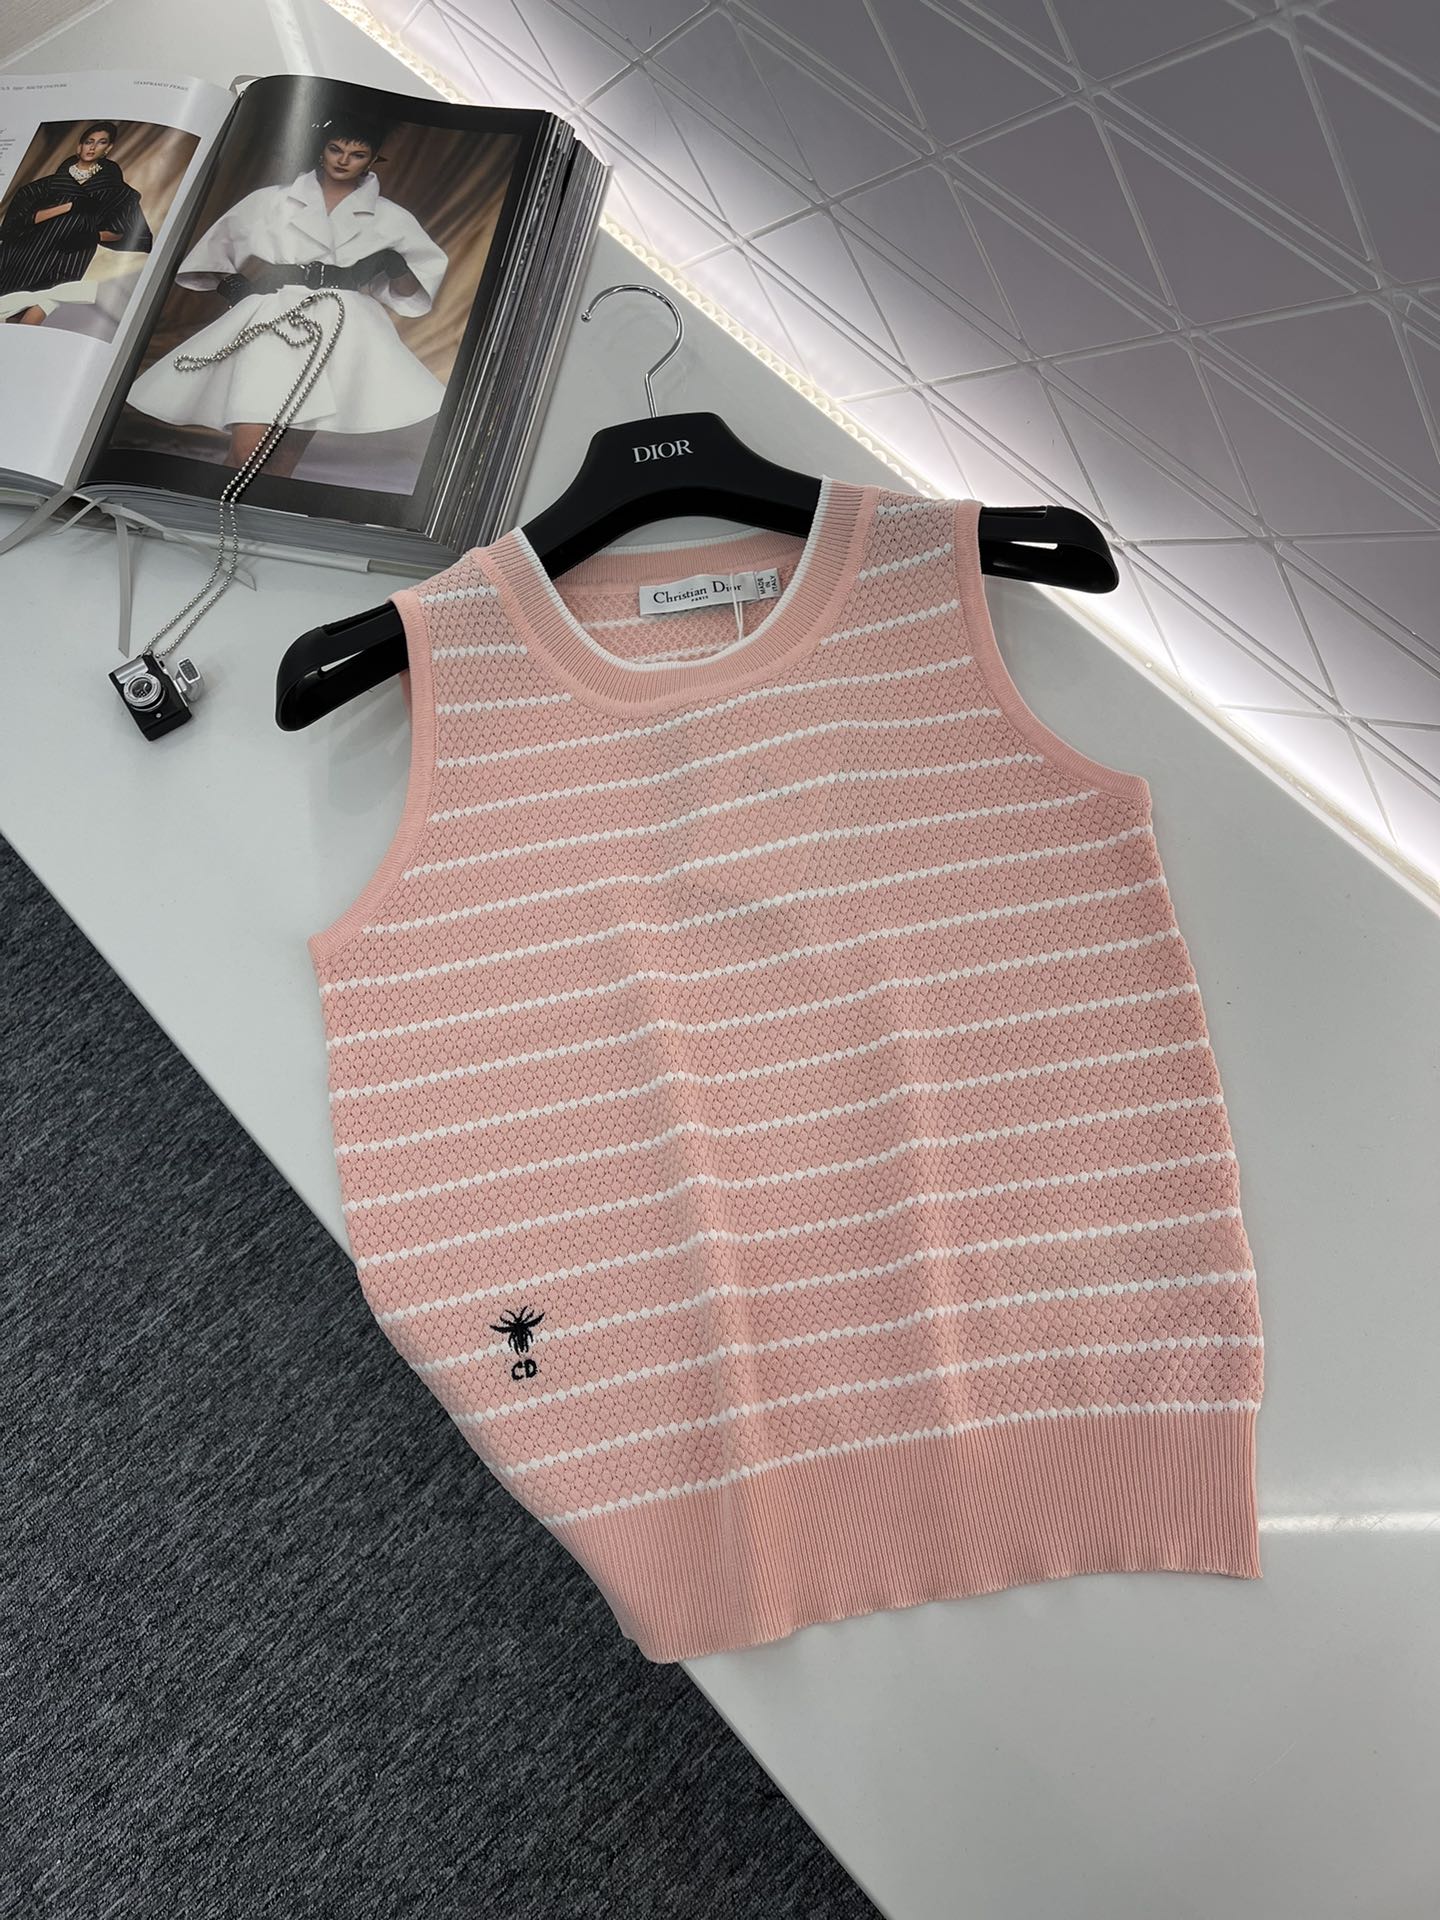 ディオール セーター レディースコピー トップス 無袖 シンプル ニット 通気性いい 縞模様 ファッション ピンク_1